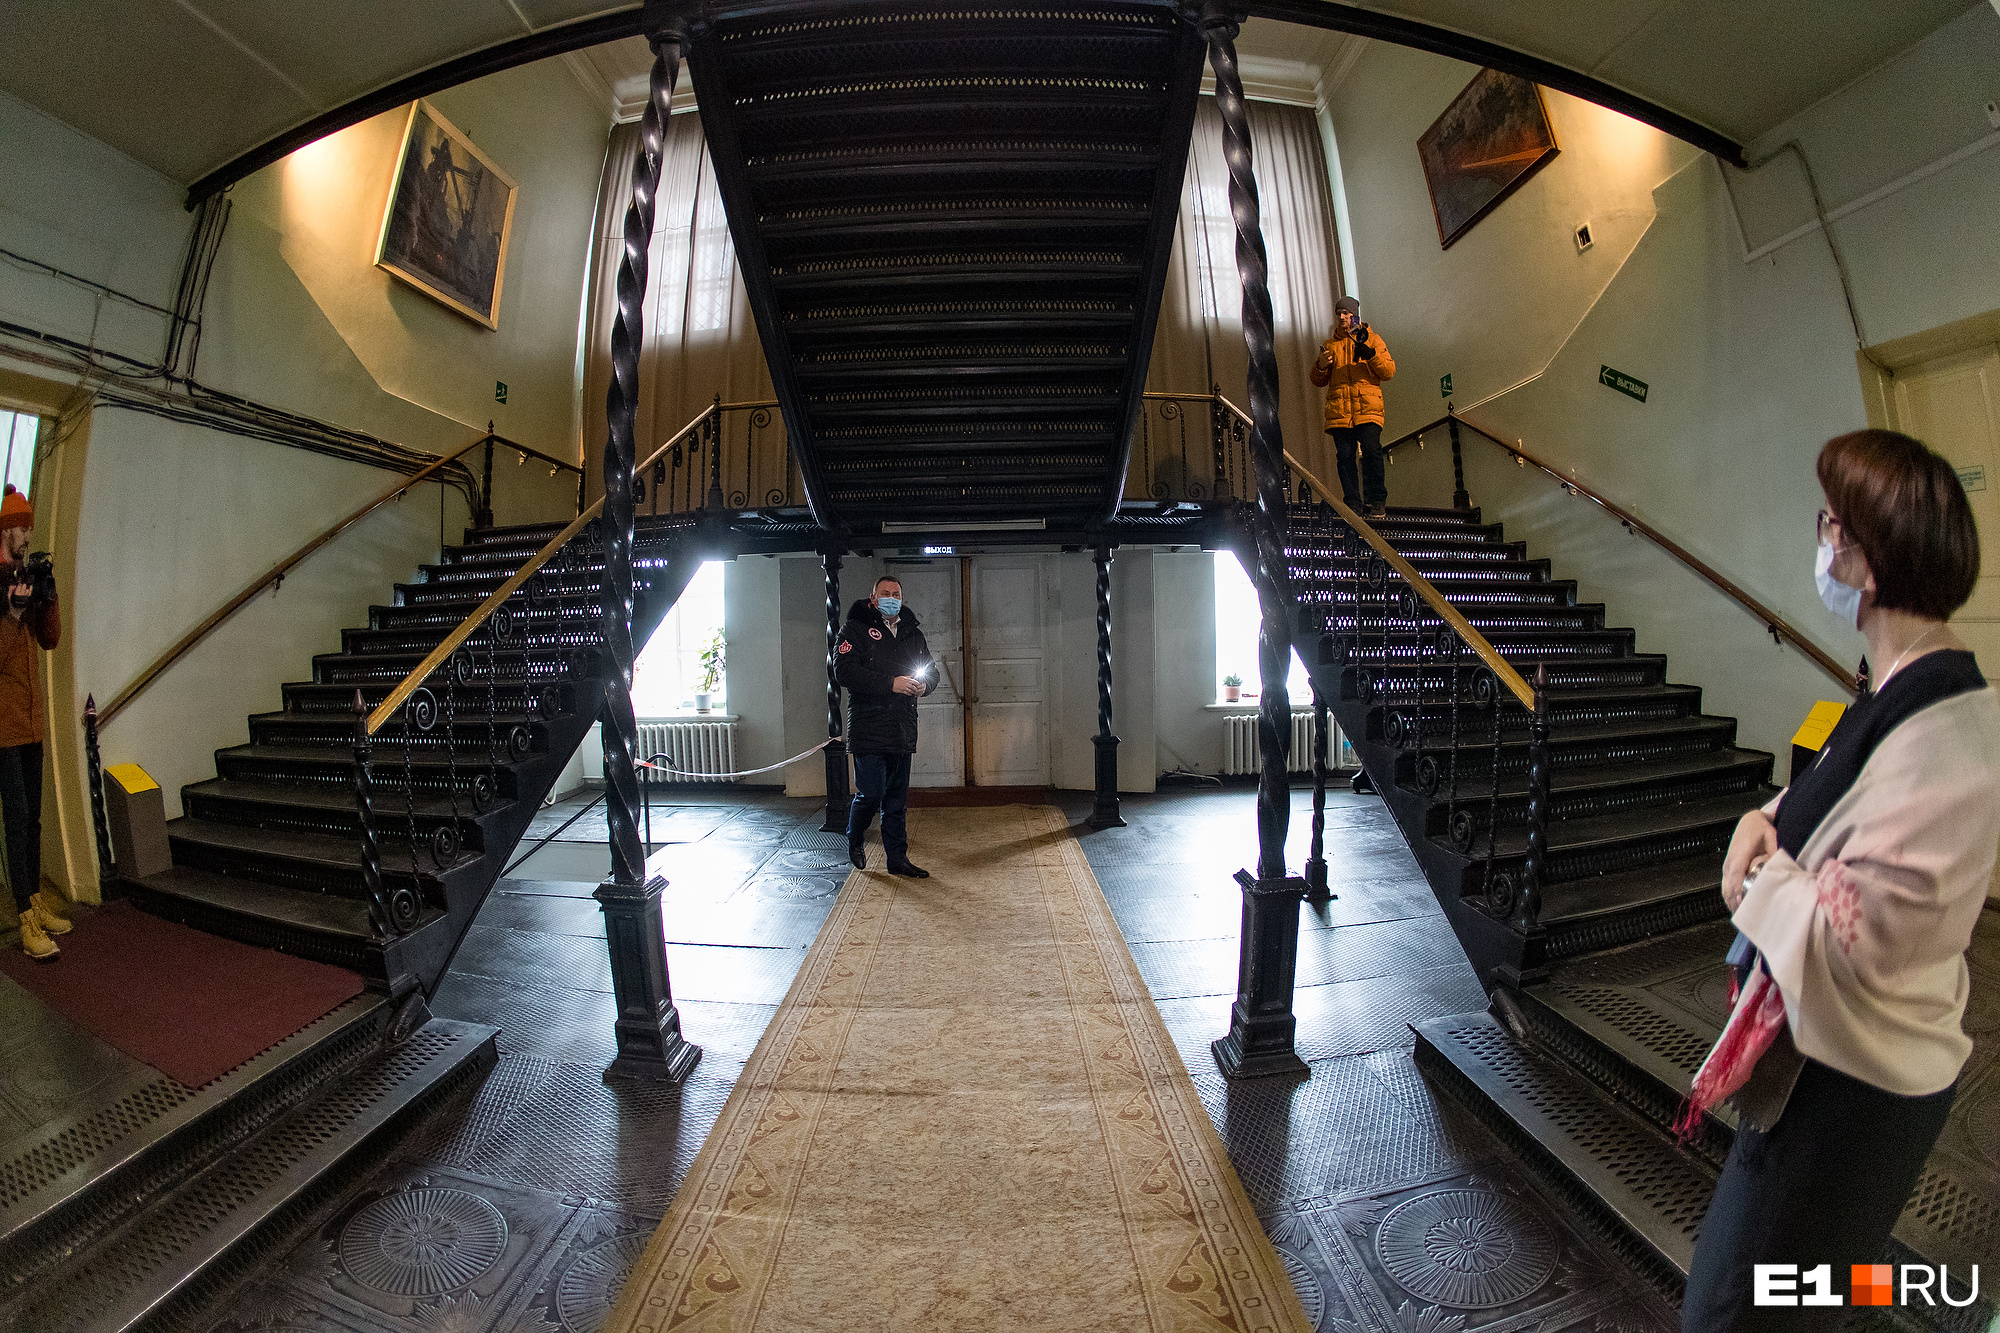 Старинная чугунная лестница — одна из главных достопримечательностей музея